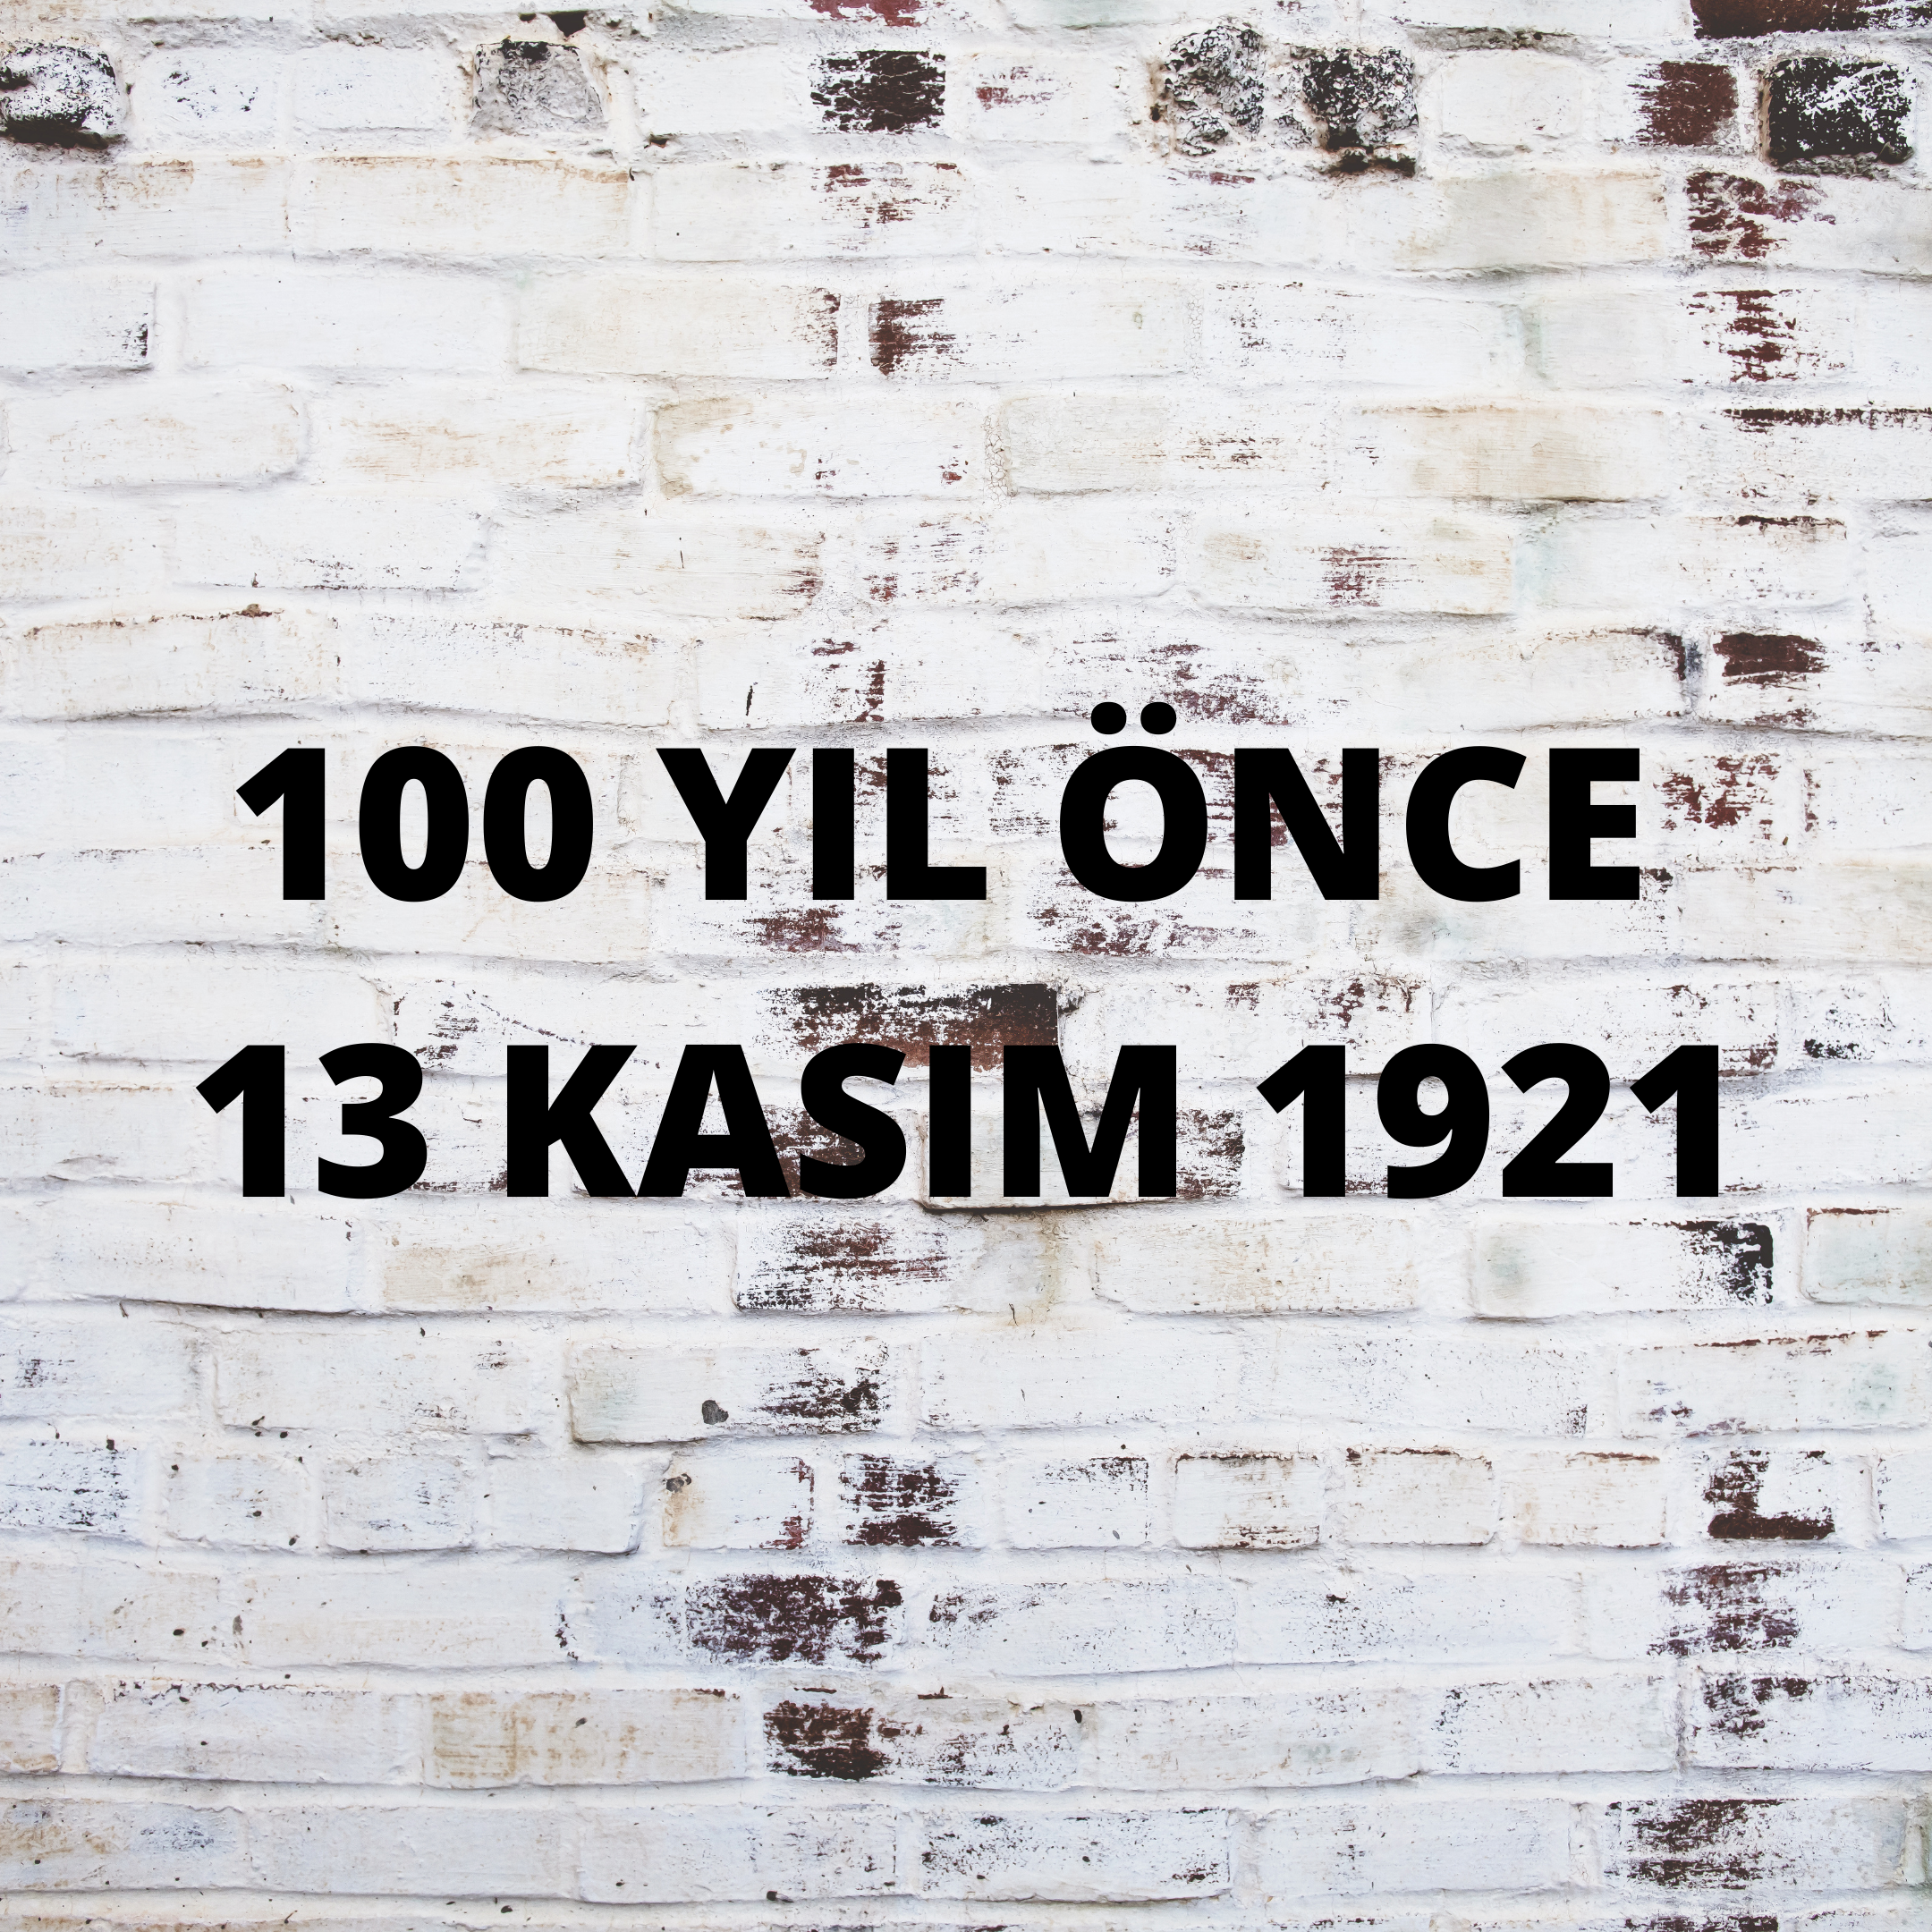 100 YIL ÖNCE 13 KASIM 1921